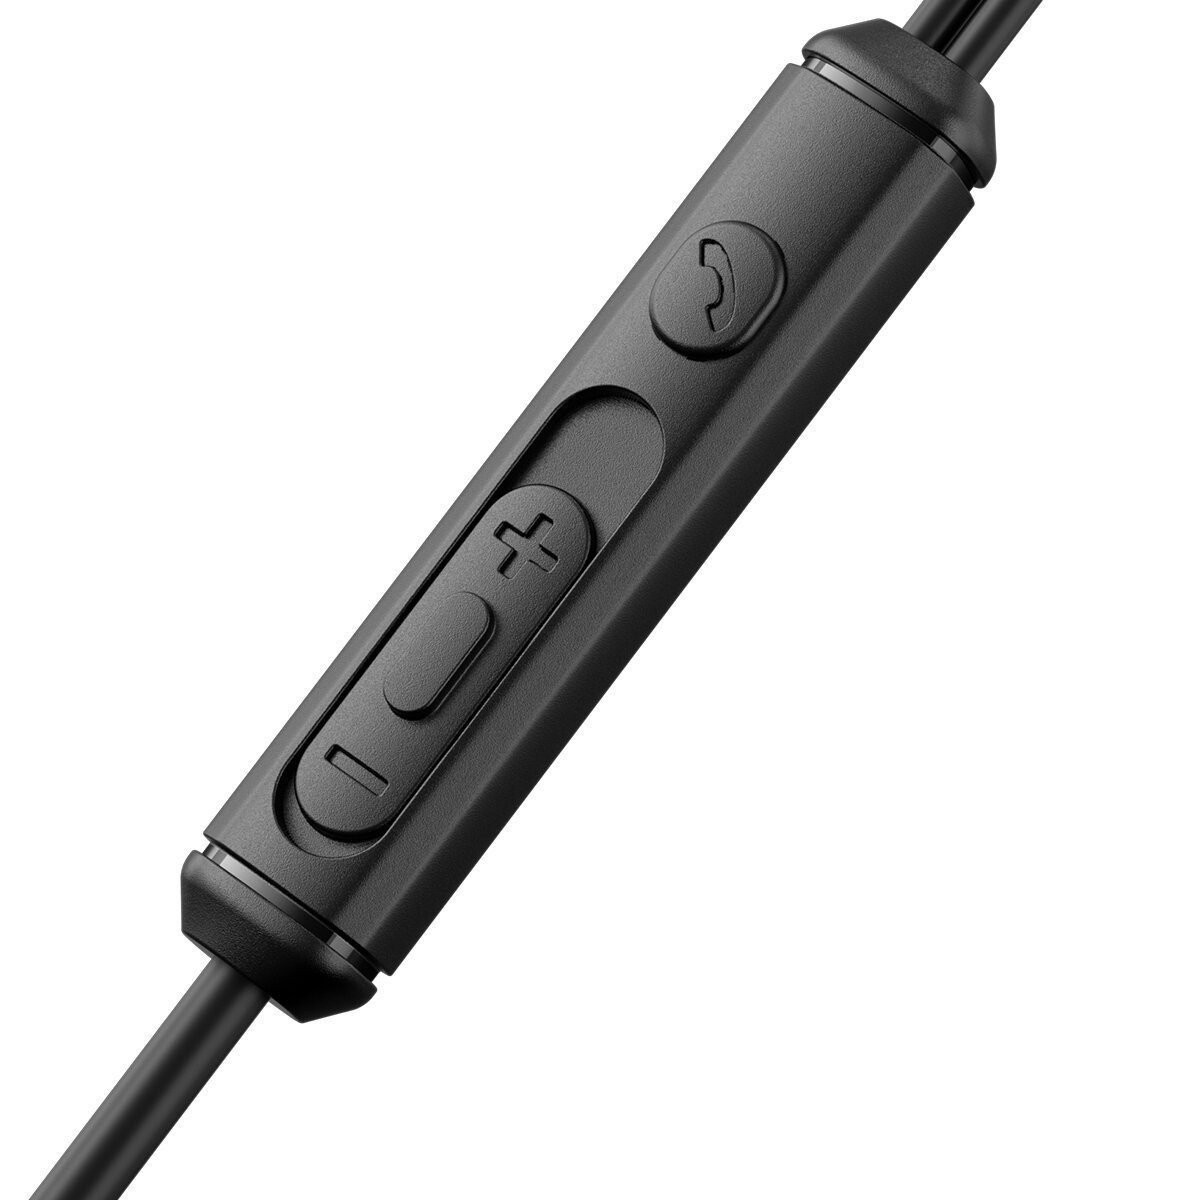 omnidirektionales Mikrofon, USB-C Kabel, mit (Kabel, JR-EC07 JOYROOM mit TYPE-C In-Ear-Kopfhörer Hochempfindliches Extra aus Metall PU-Hülle) Schwarz Anschluss Series